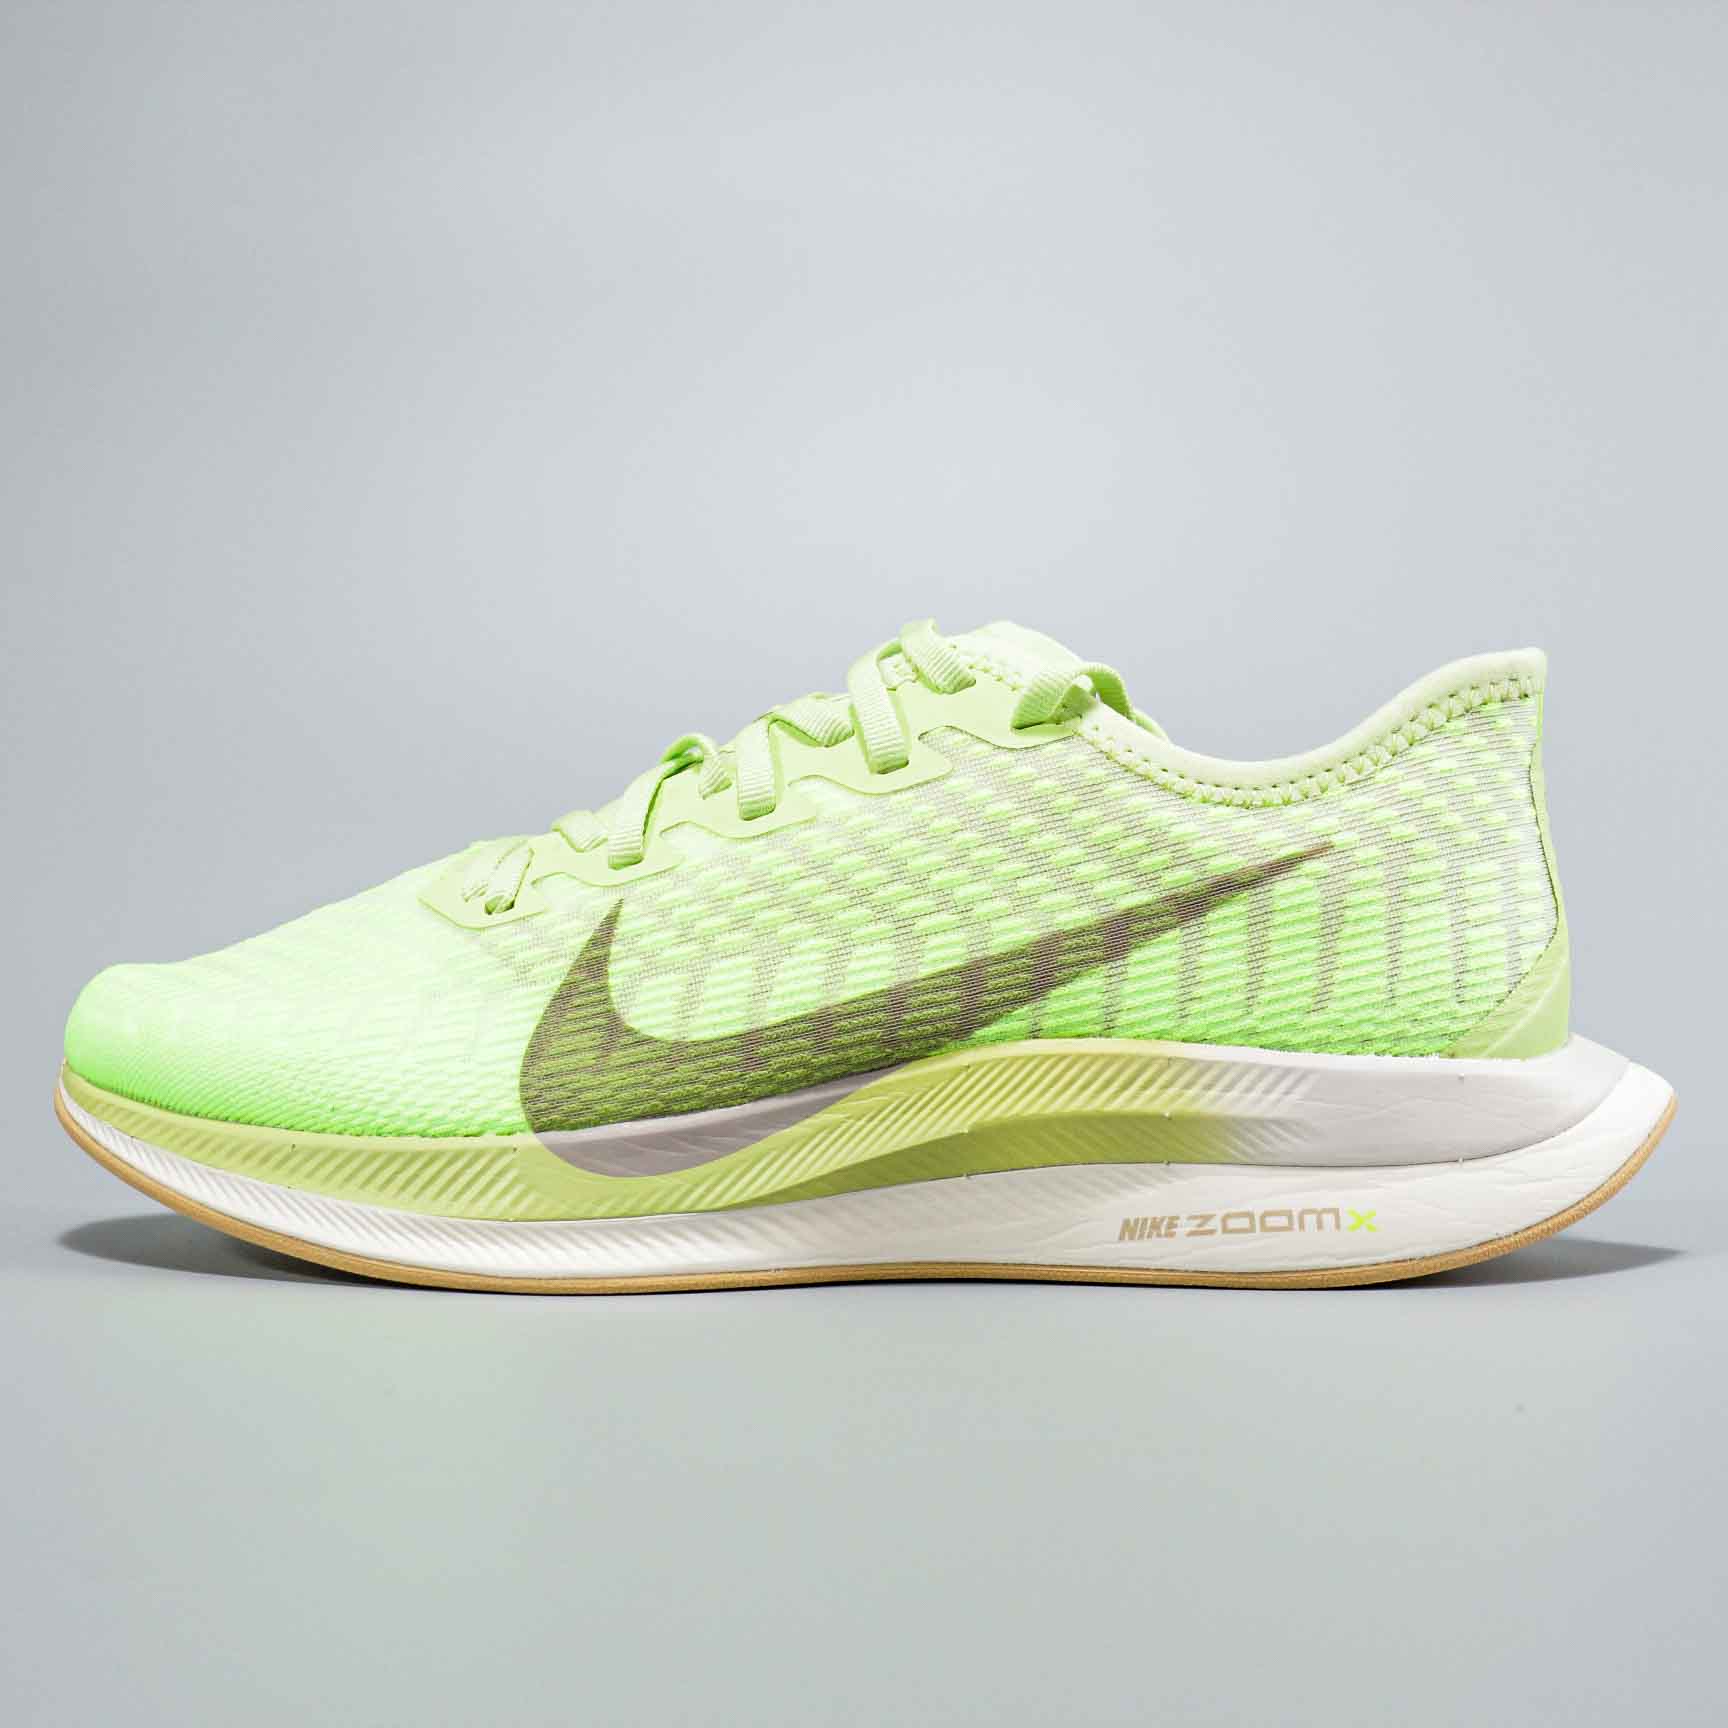 2020 Women Nike Zoom Pegasus Turbo 2 Green Yellow Running Shoes For Women